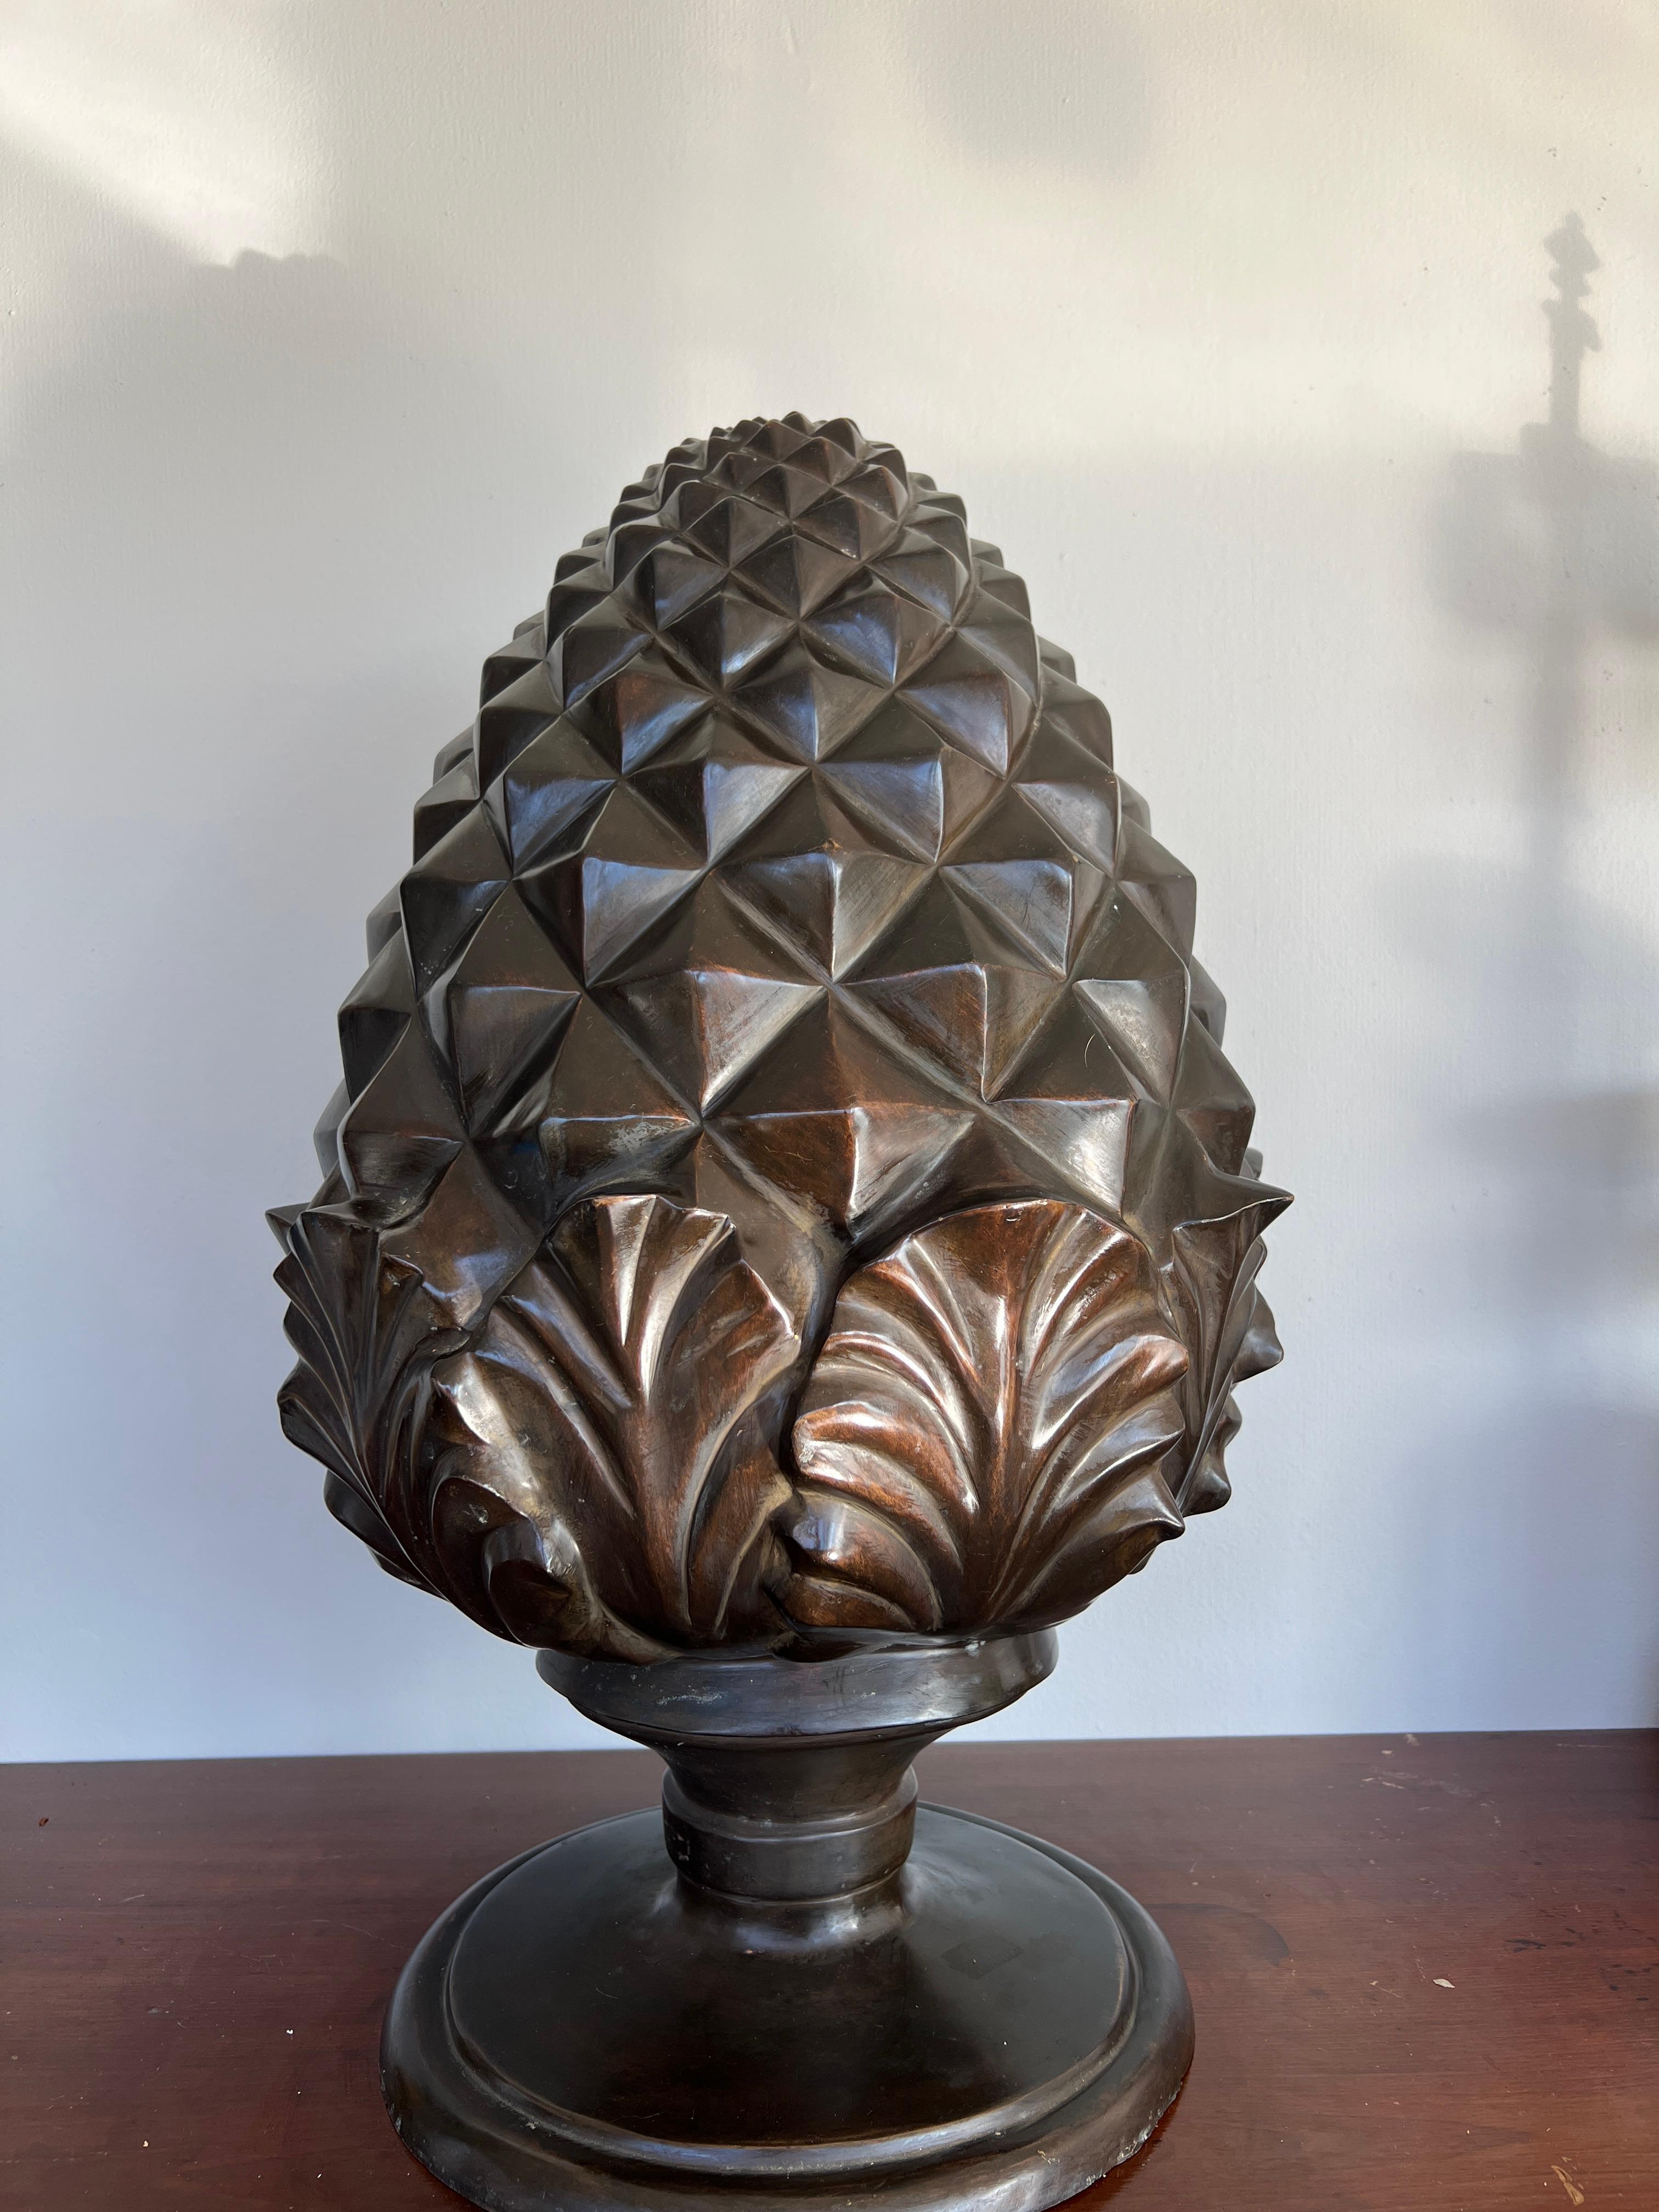 Ein großformatiges Bronzemodell eines Ananaszapfens oder einer Ananas. Das Stück hat Akanthusblattsprossen und massive pyramidenförmige Zacken am Körper. Wahrscheinlich in den 1980er Jahren hergestellt. 

23